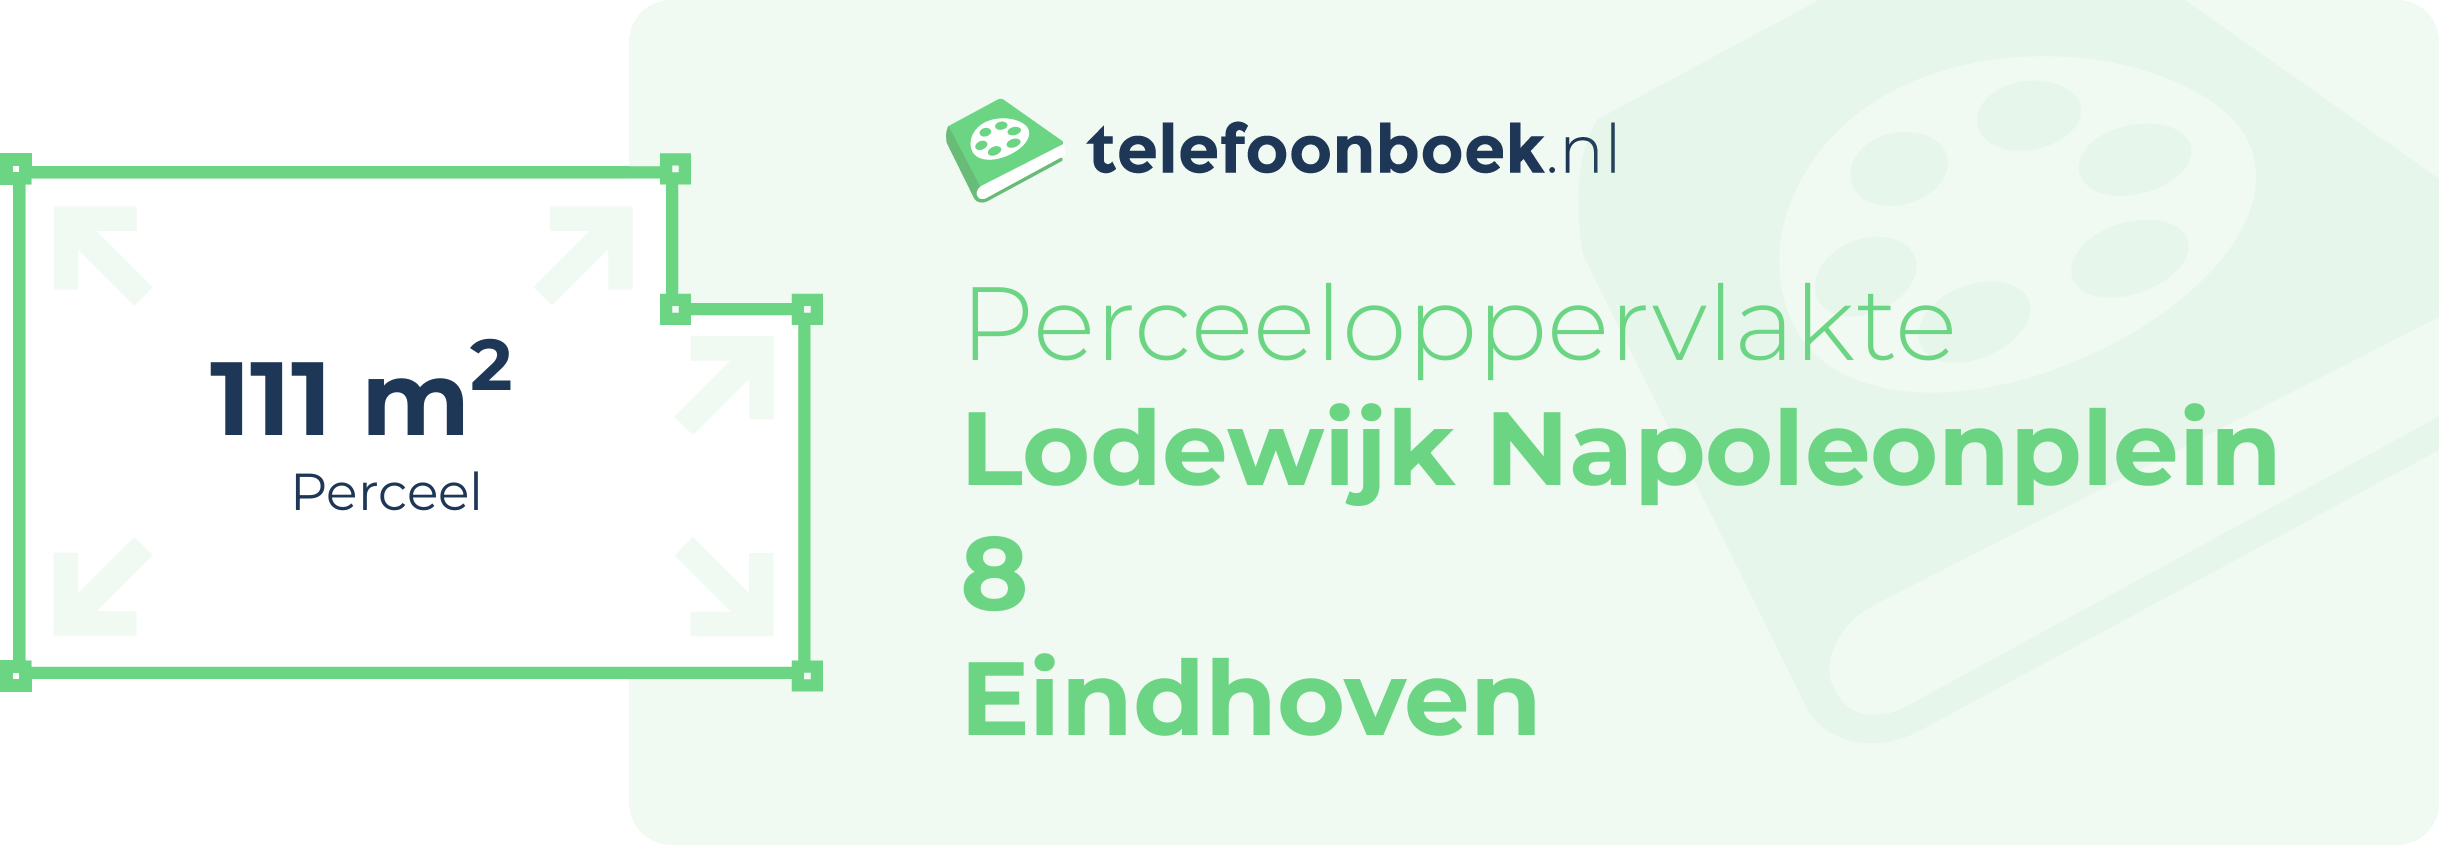 Perceeloppervlakte Lodewijk Napoleonplein 8 Eindhoven